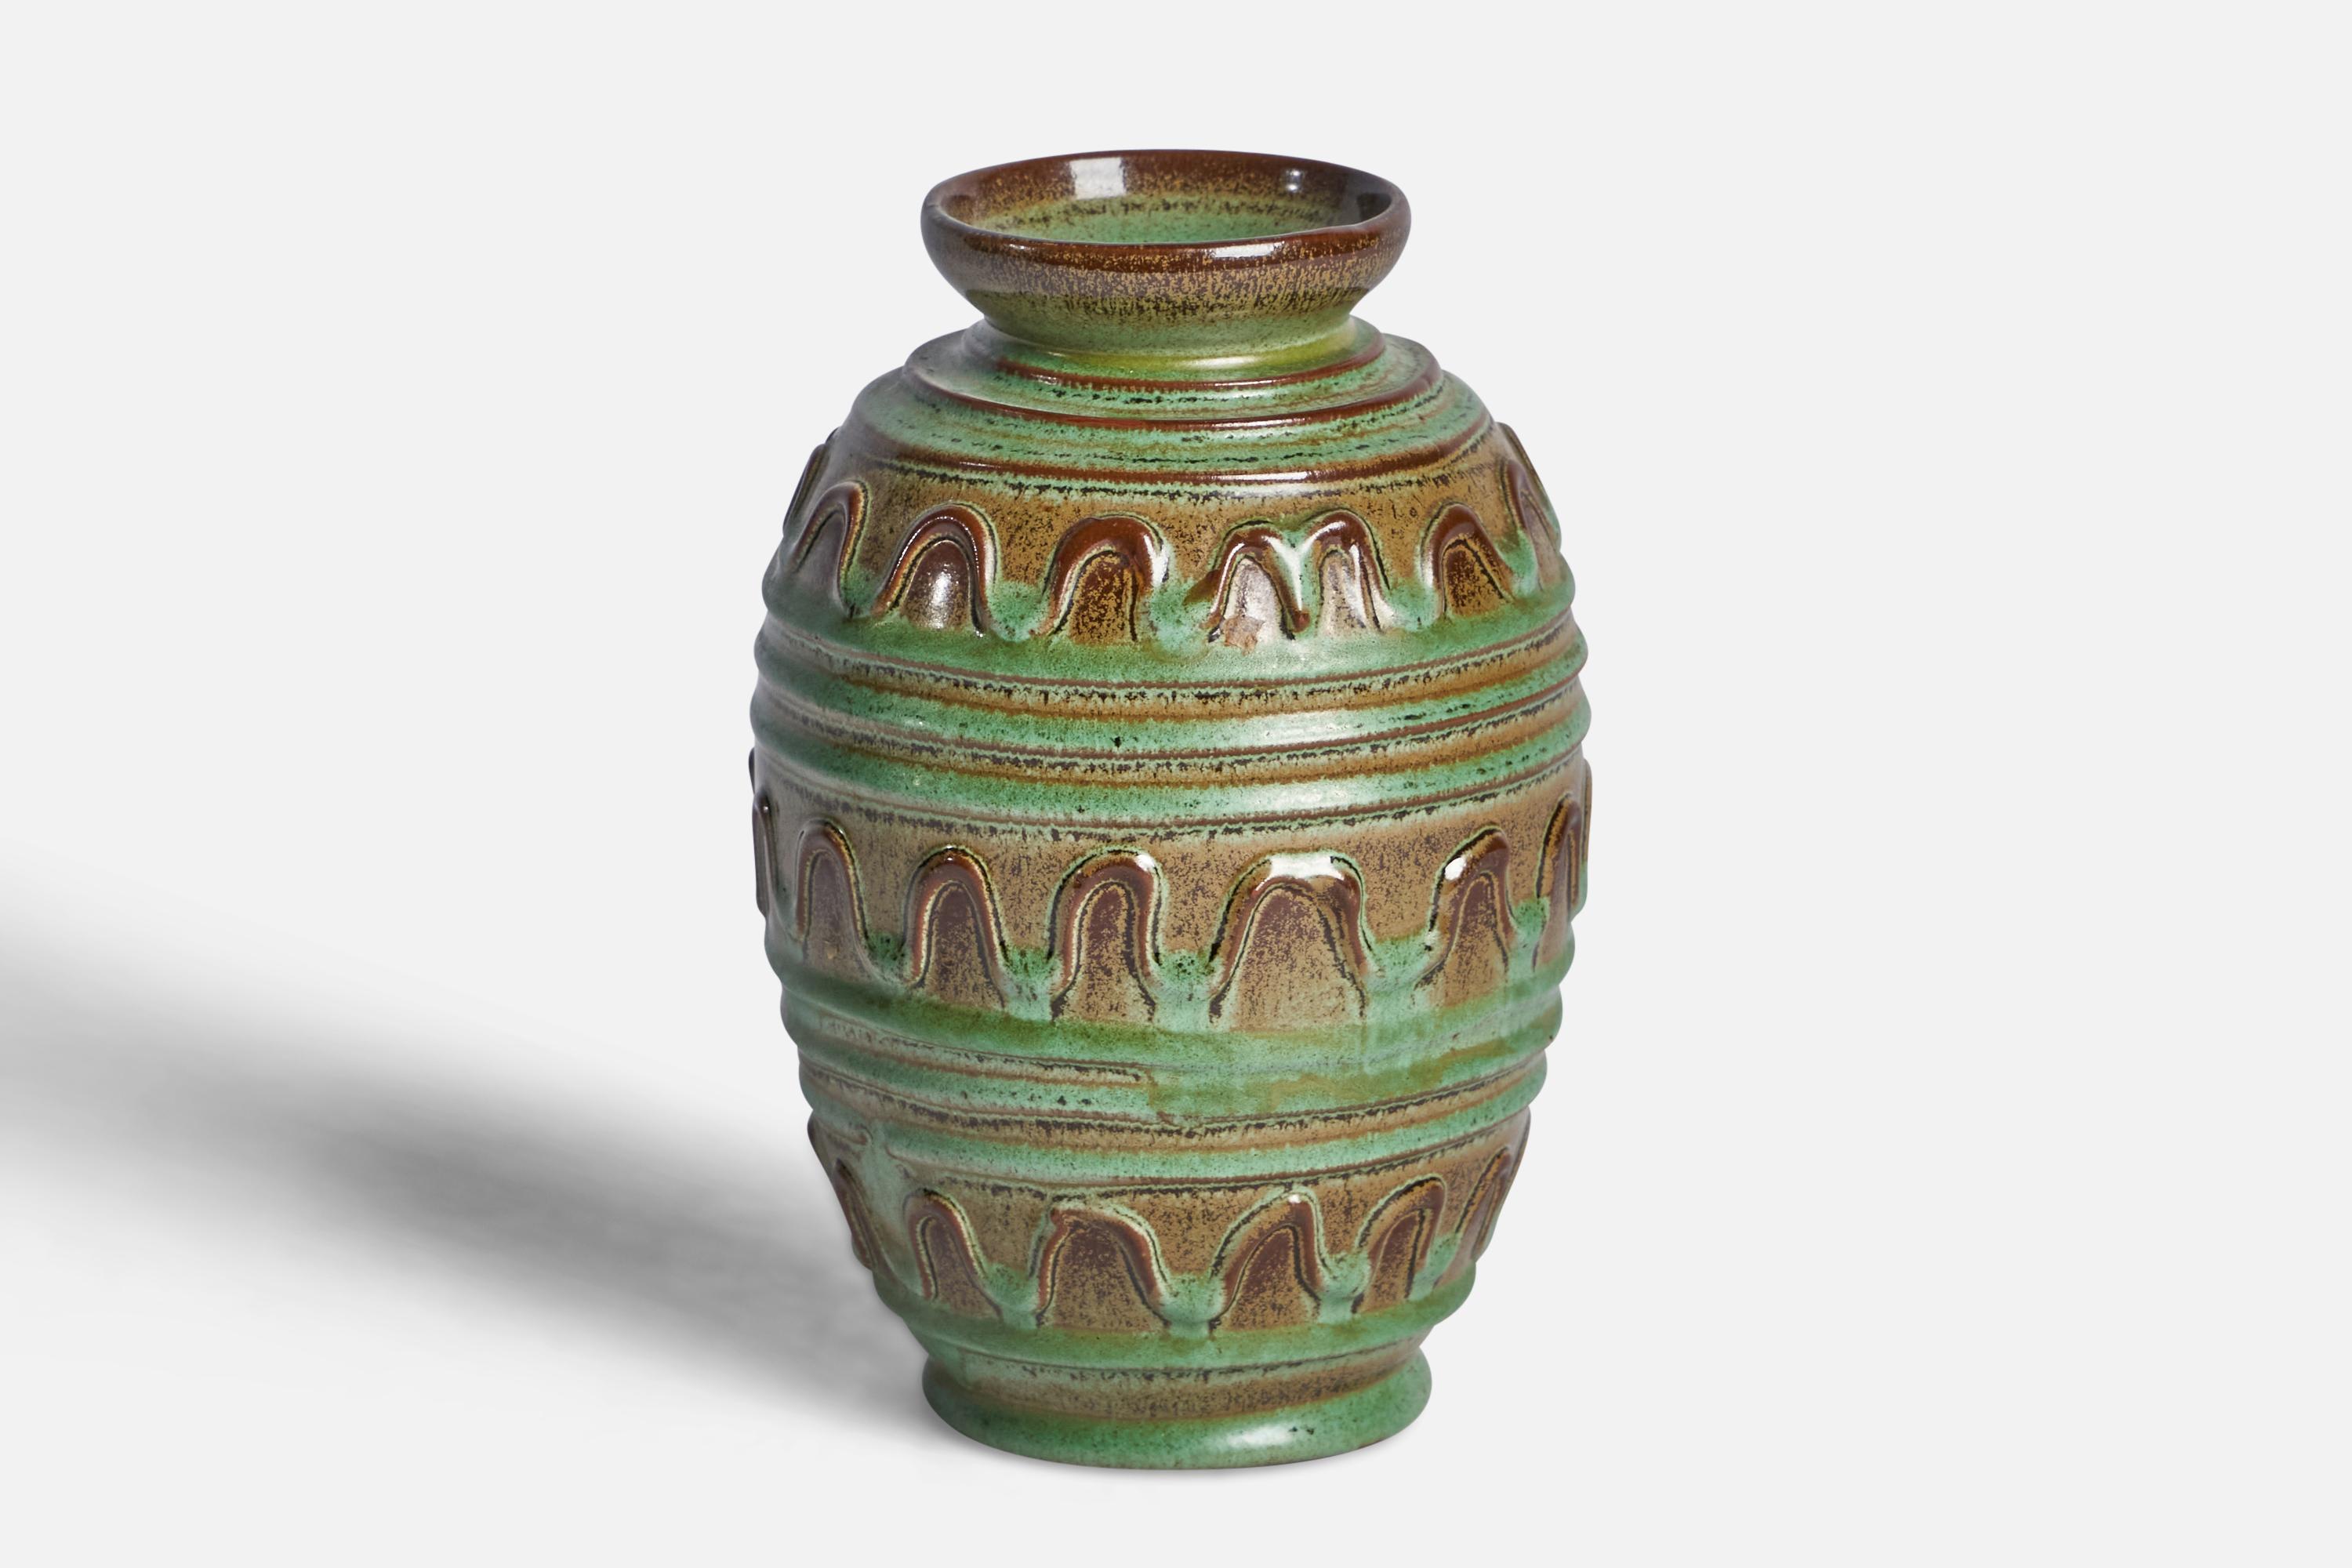 Vase aus grün und braun glasiertem Steingut, entworfen von Erik Mornils und hergestellt von Nittsjö, Schweden, um 1930.